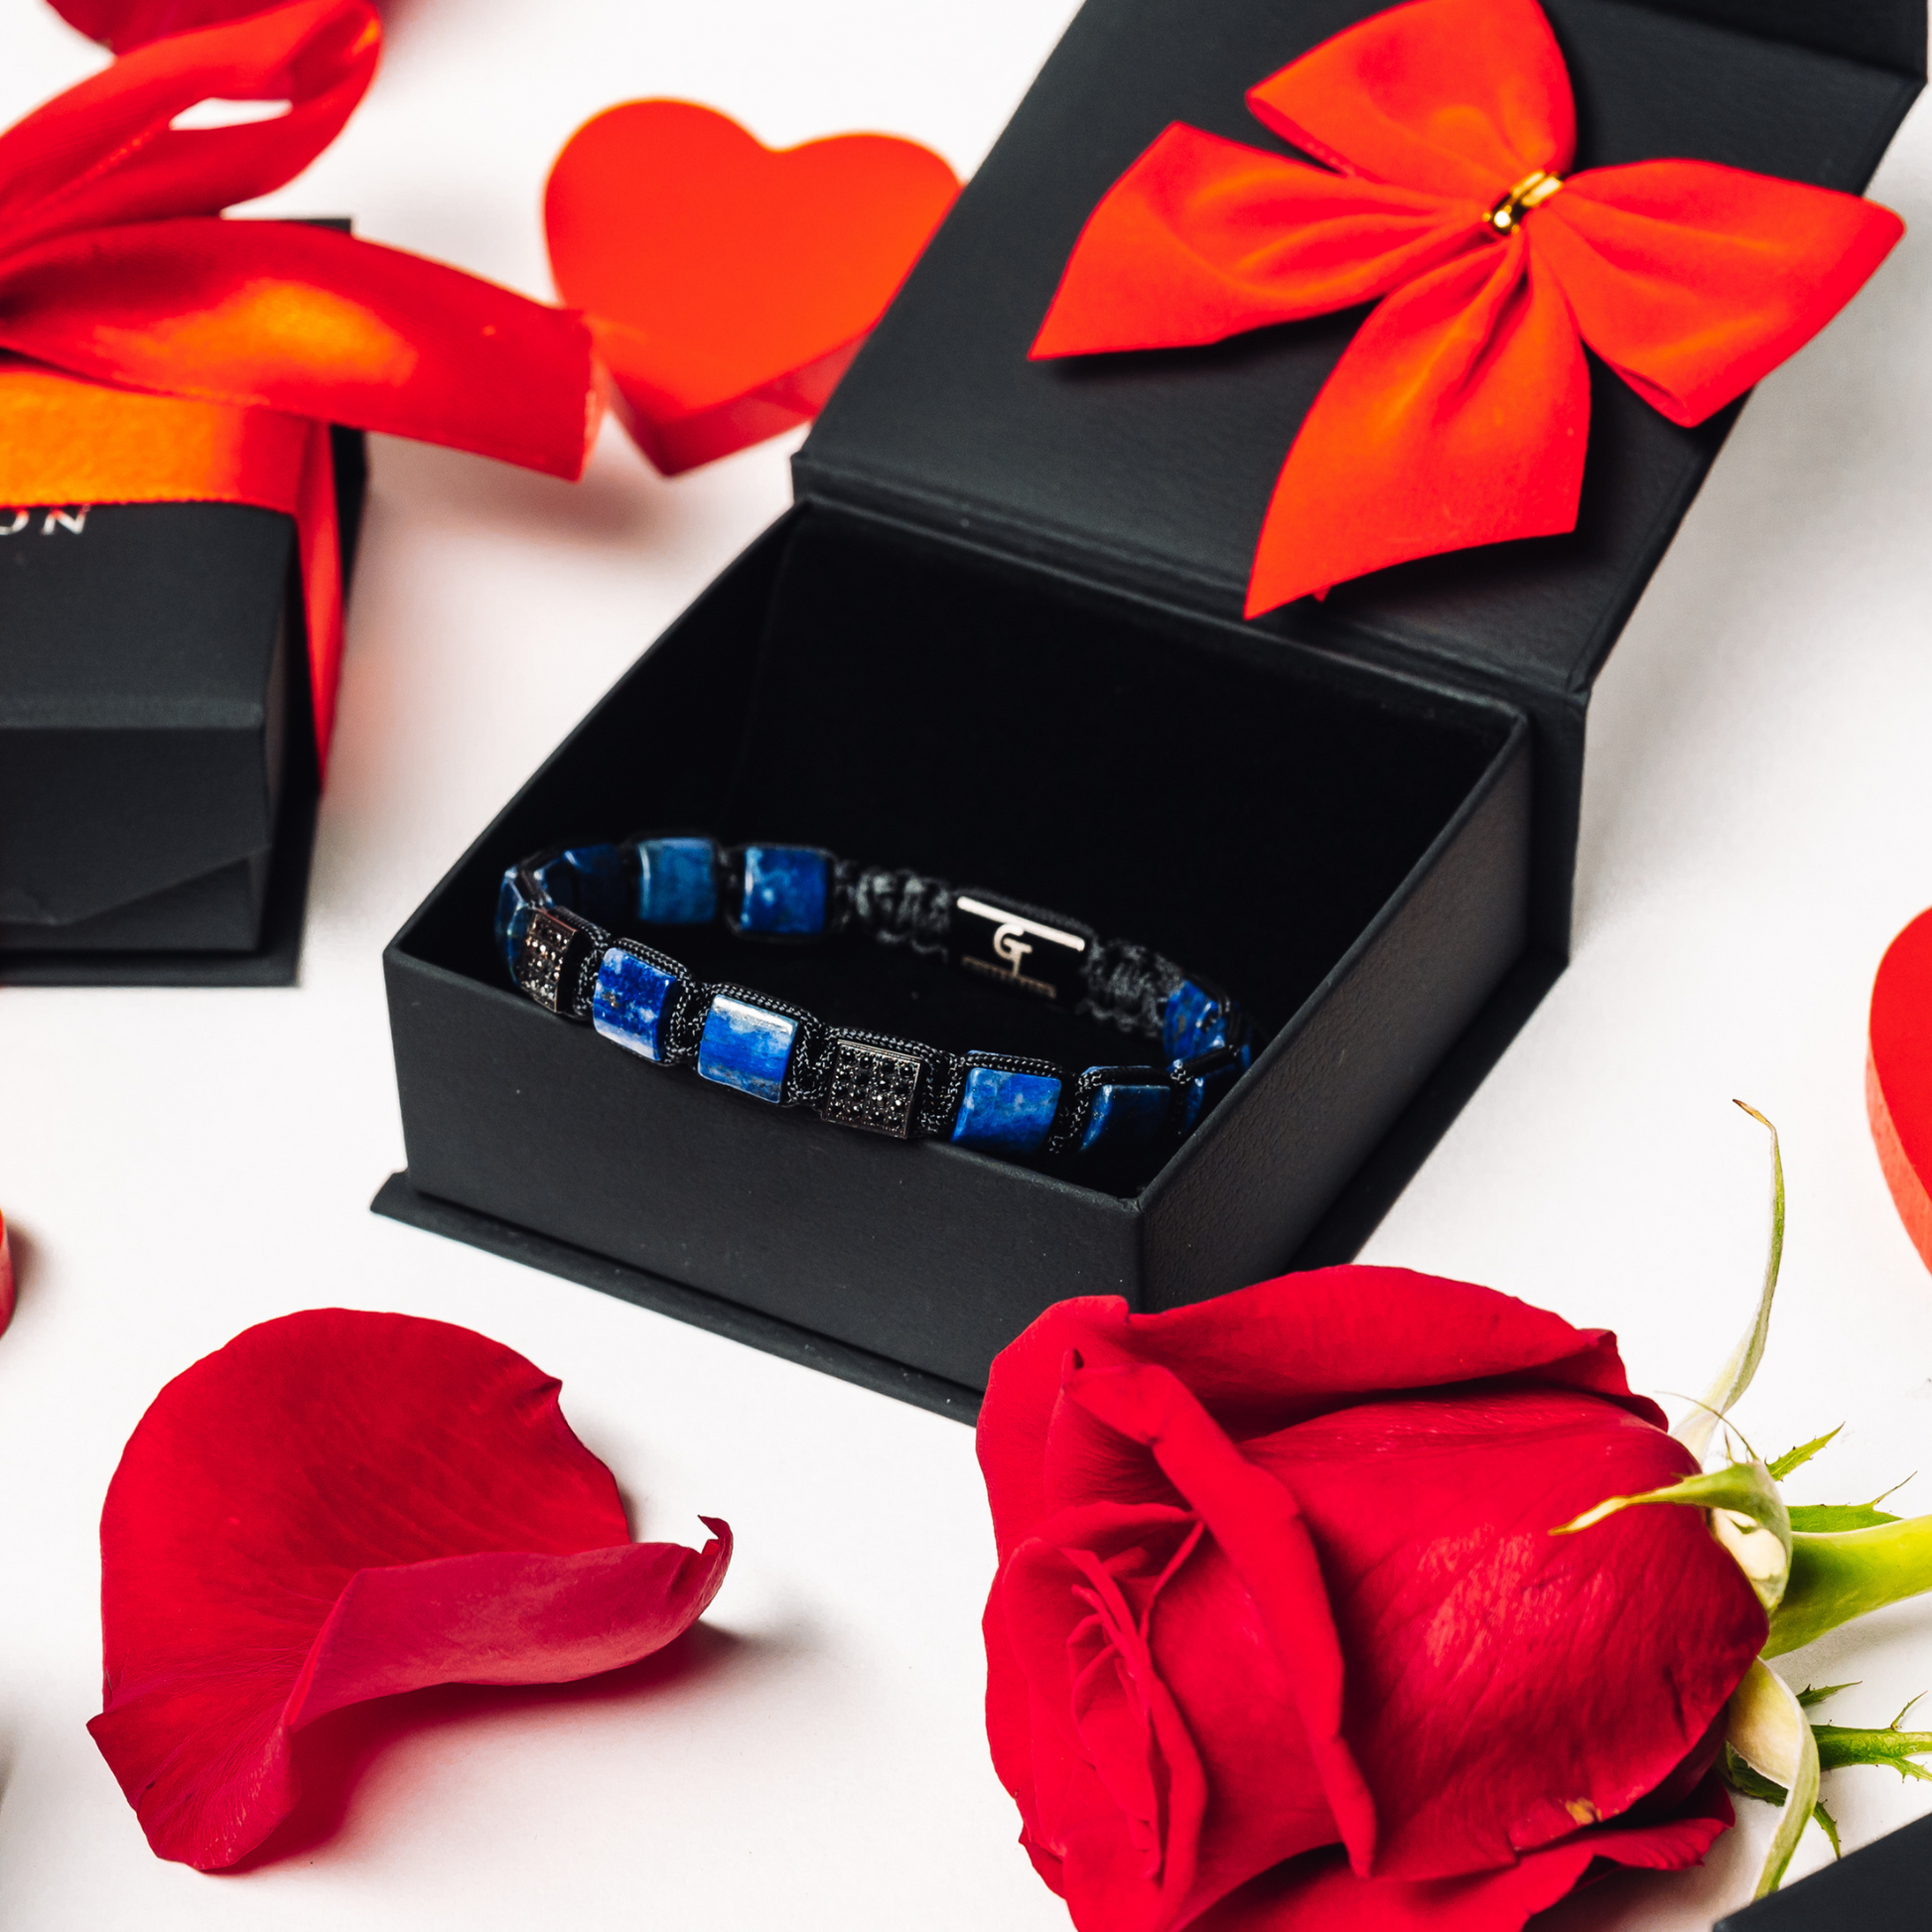 Men's Lapis Bead Bracelet - Lapis Lazuli Bracelet | GT Collection